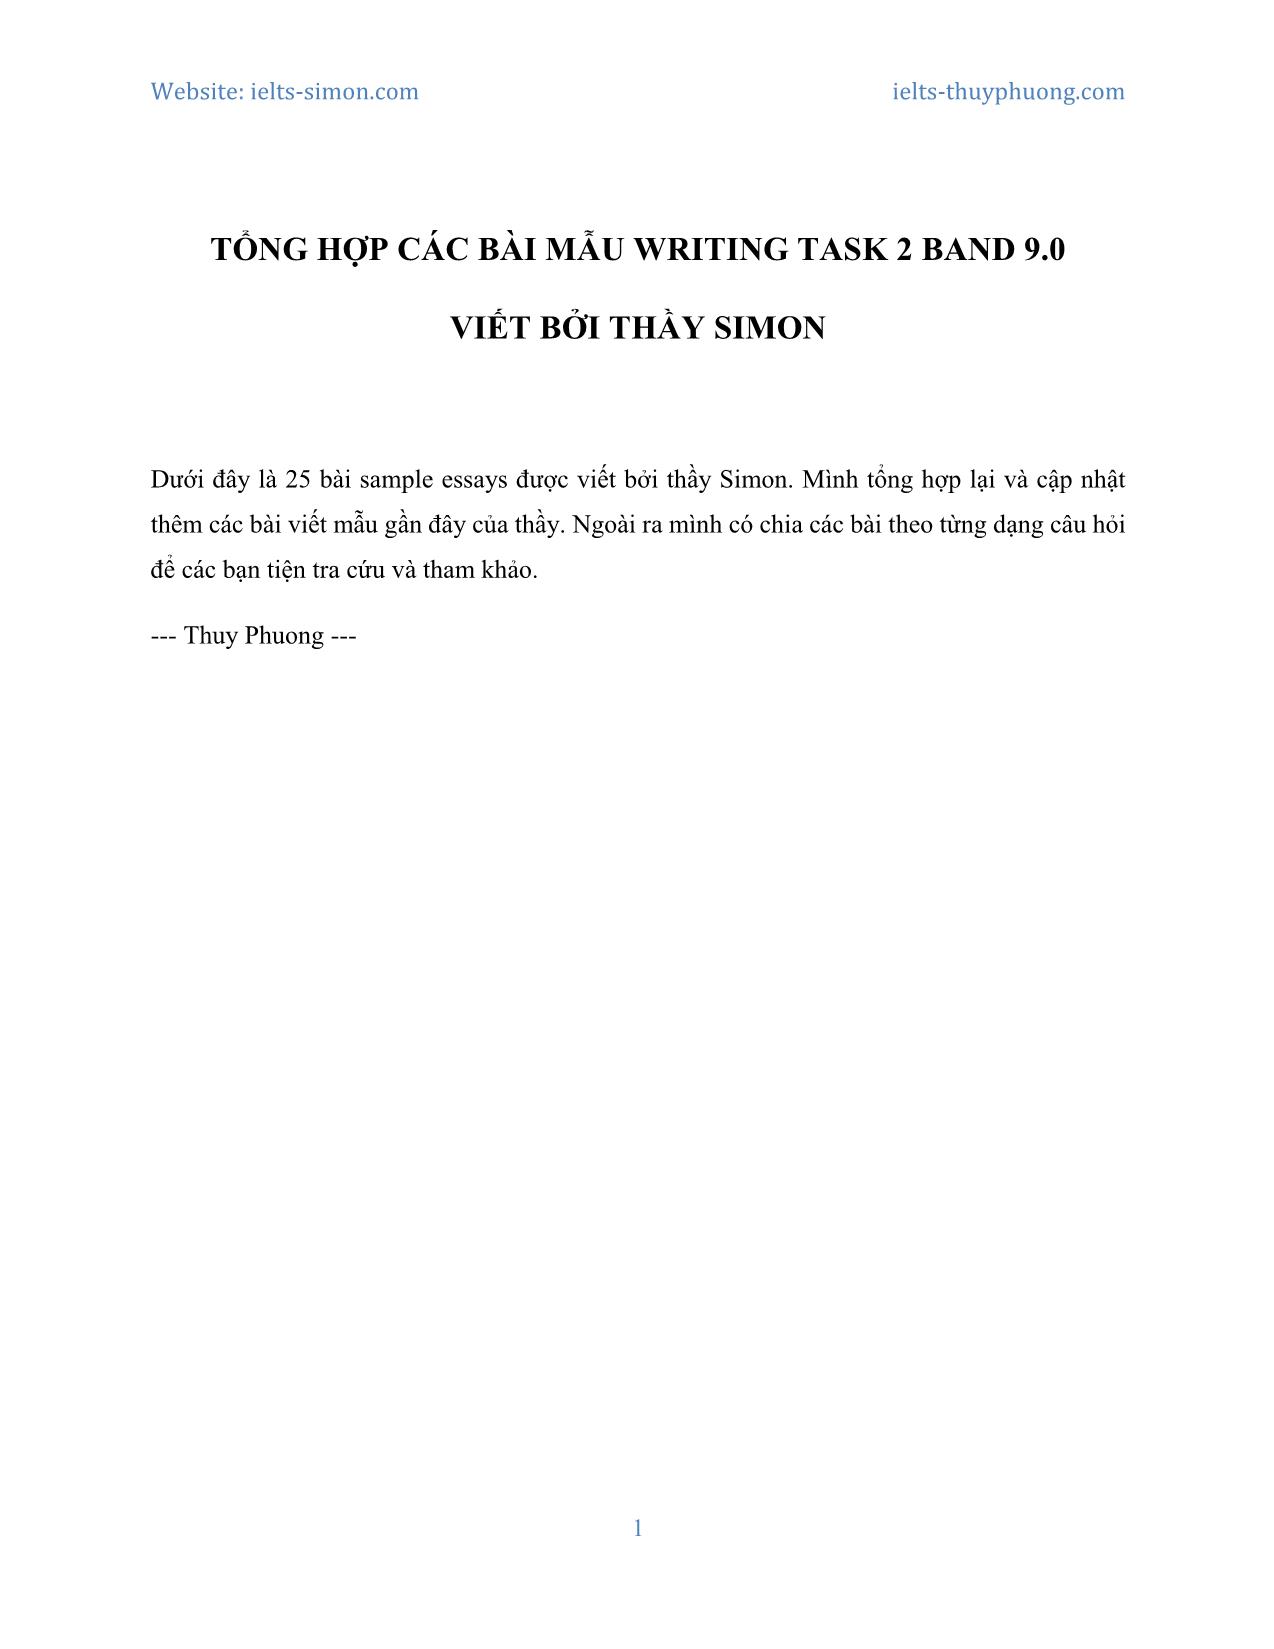 Tổng hợp các bài mẫu writing task 2 band 9.0 trang 1